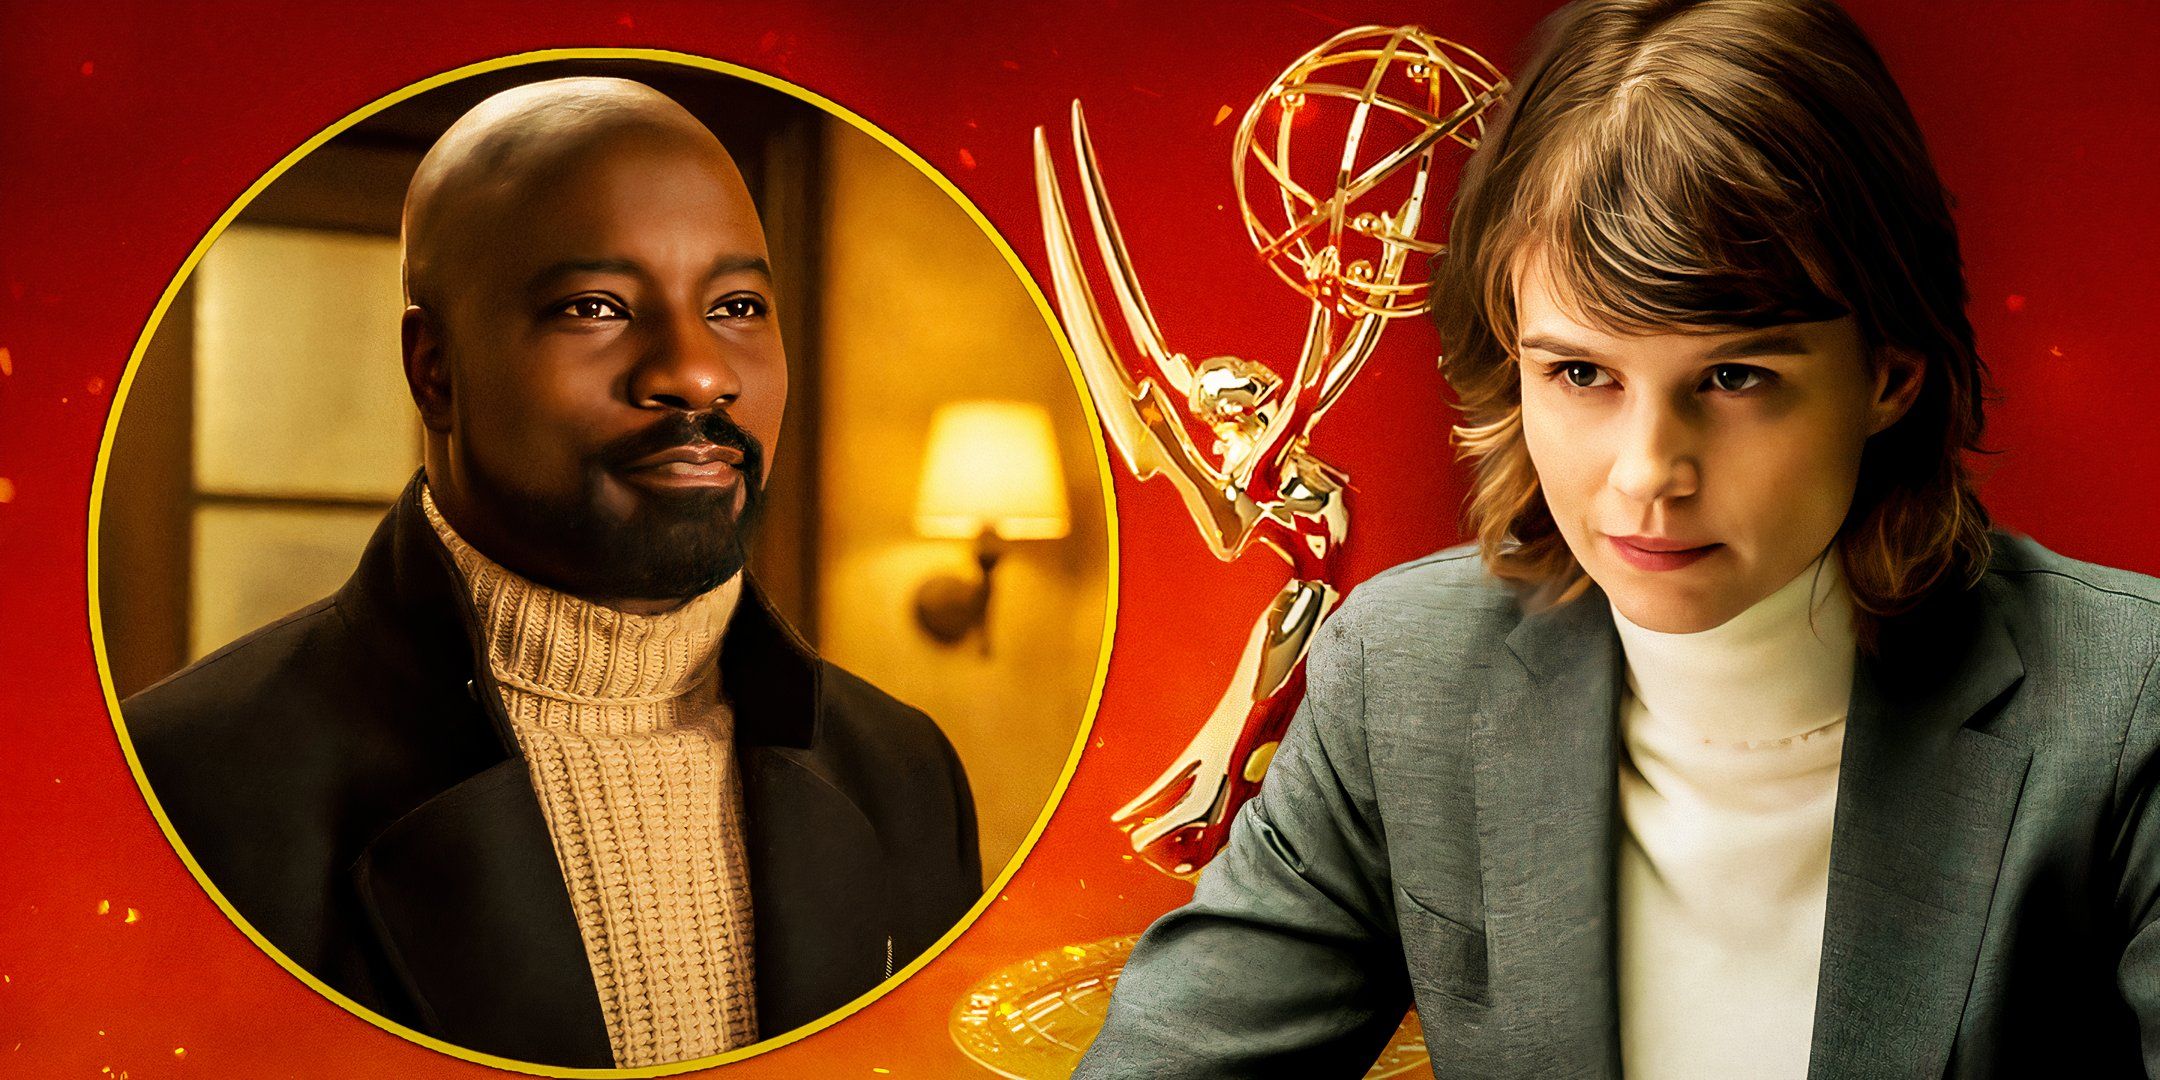 “Me siento decepcionado”: la cancelación sorpresiva de Evil y su desaire a los Emmy reciben una respuesta apasionada de la estrella de la temporada 4